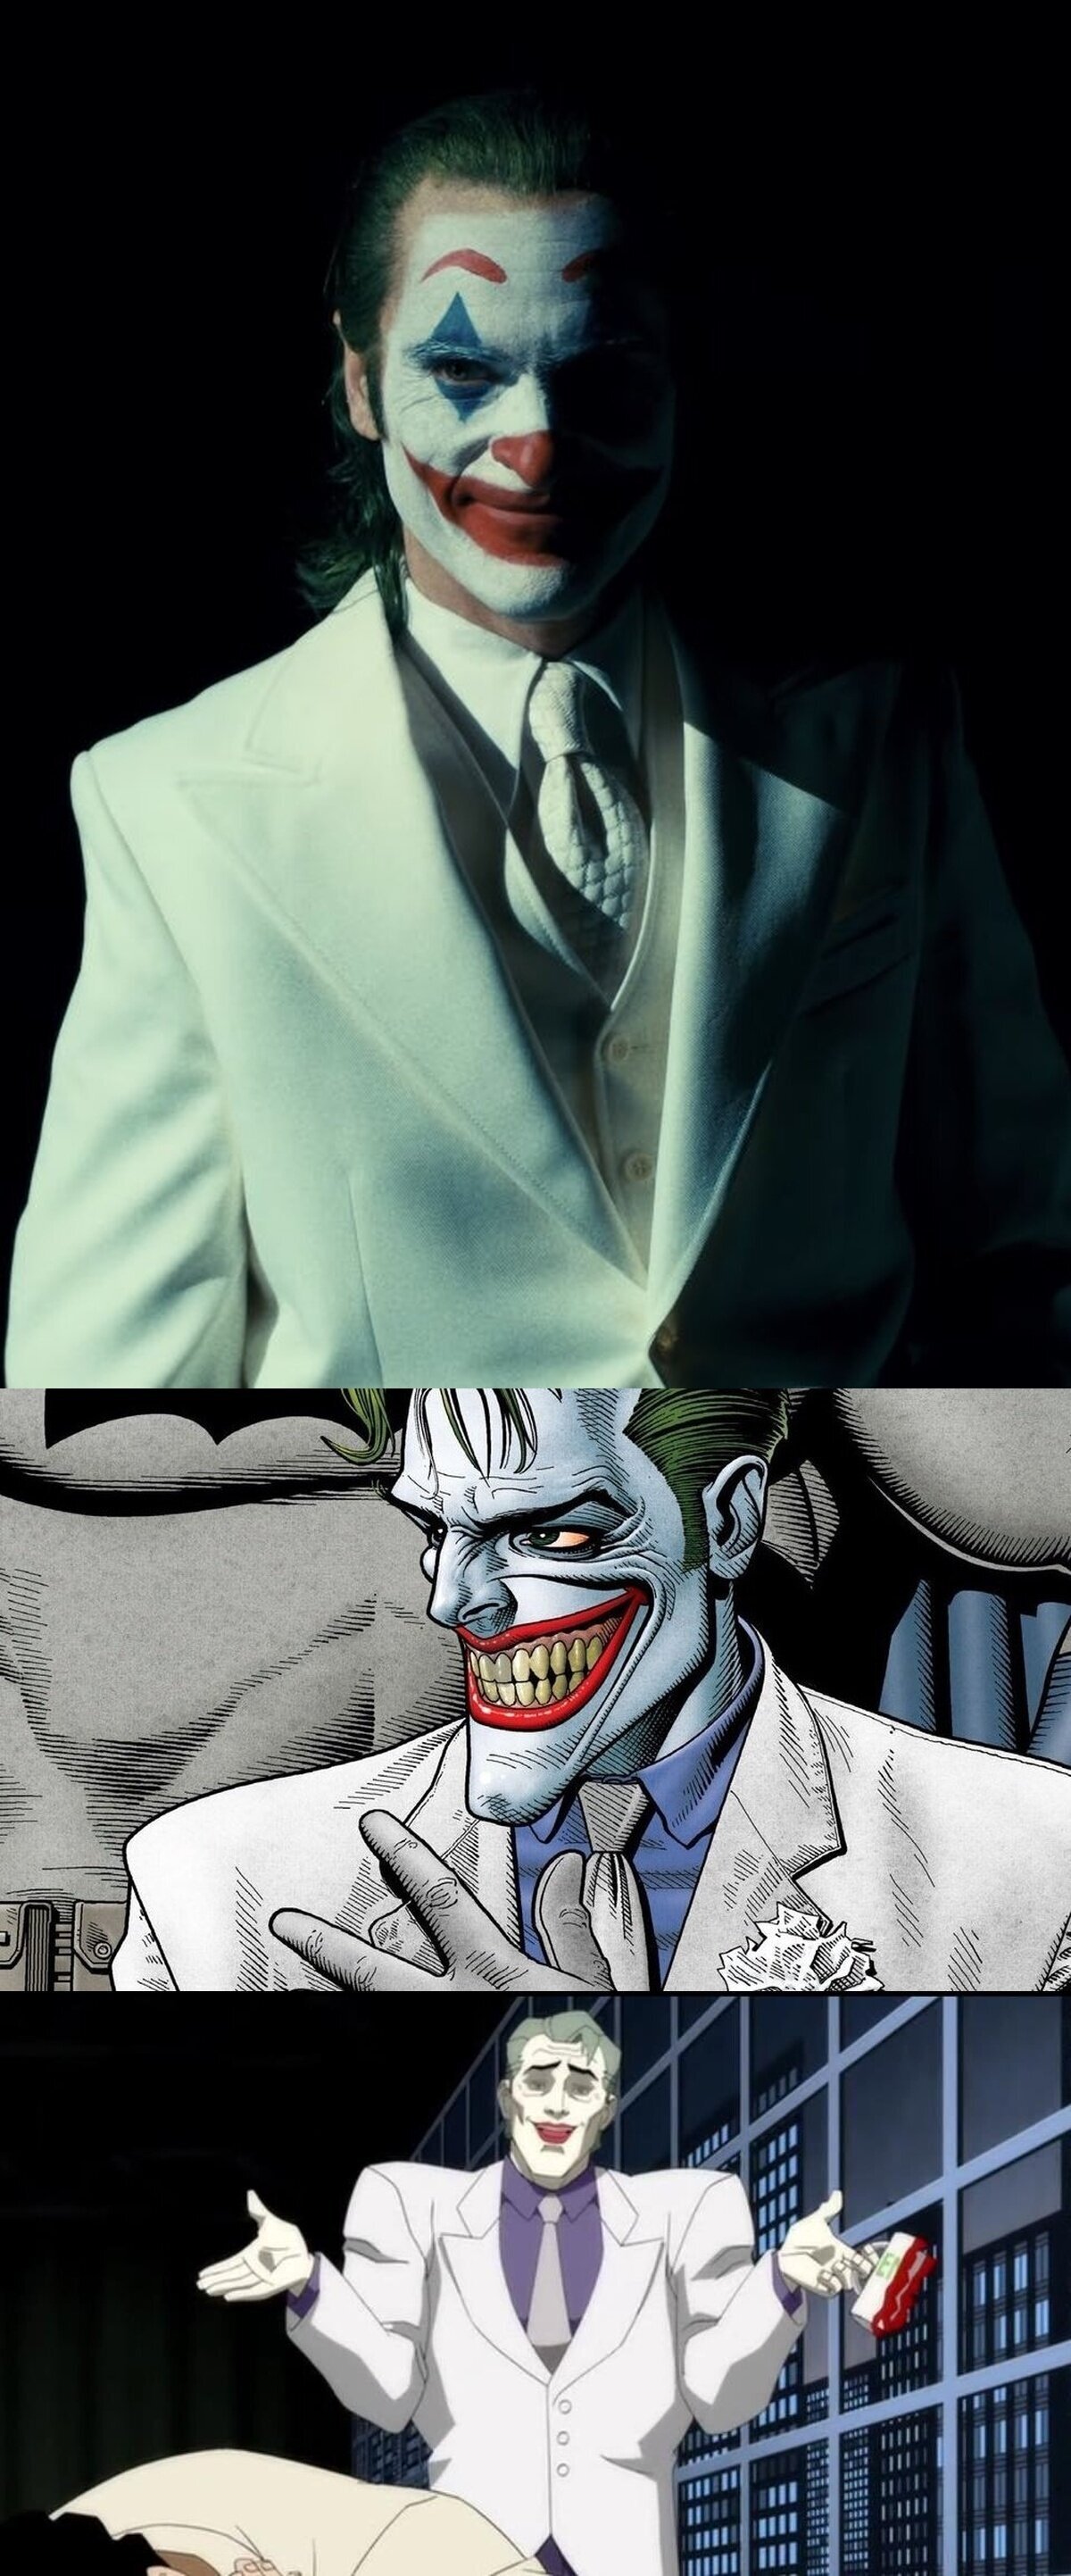 ¿Que quieren un Joker vestido de blanco?Pues démosles un Joker vestido de blanco.